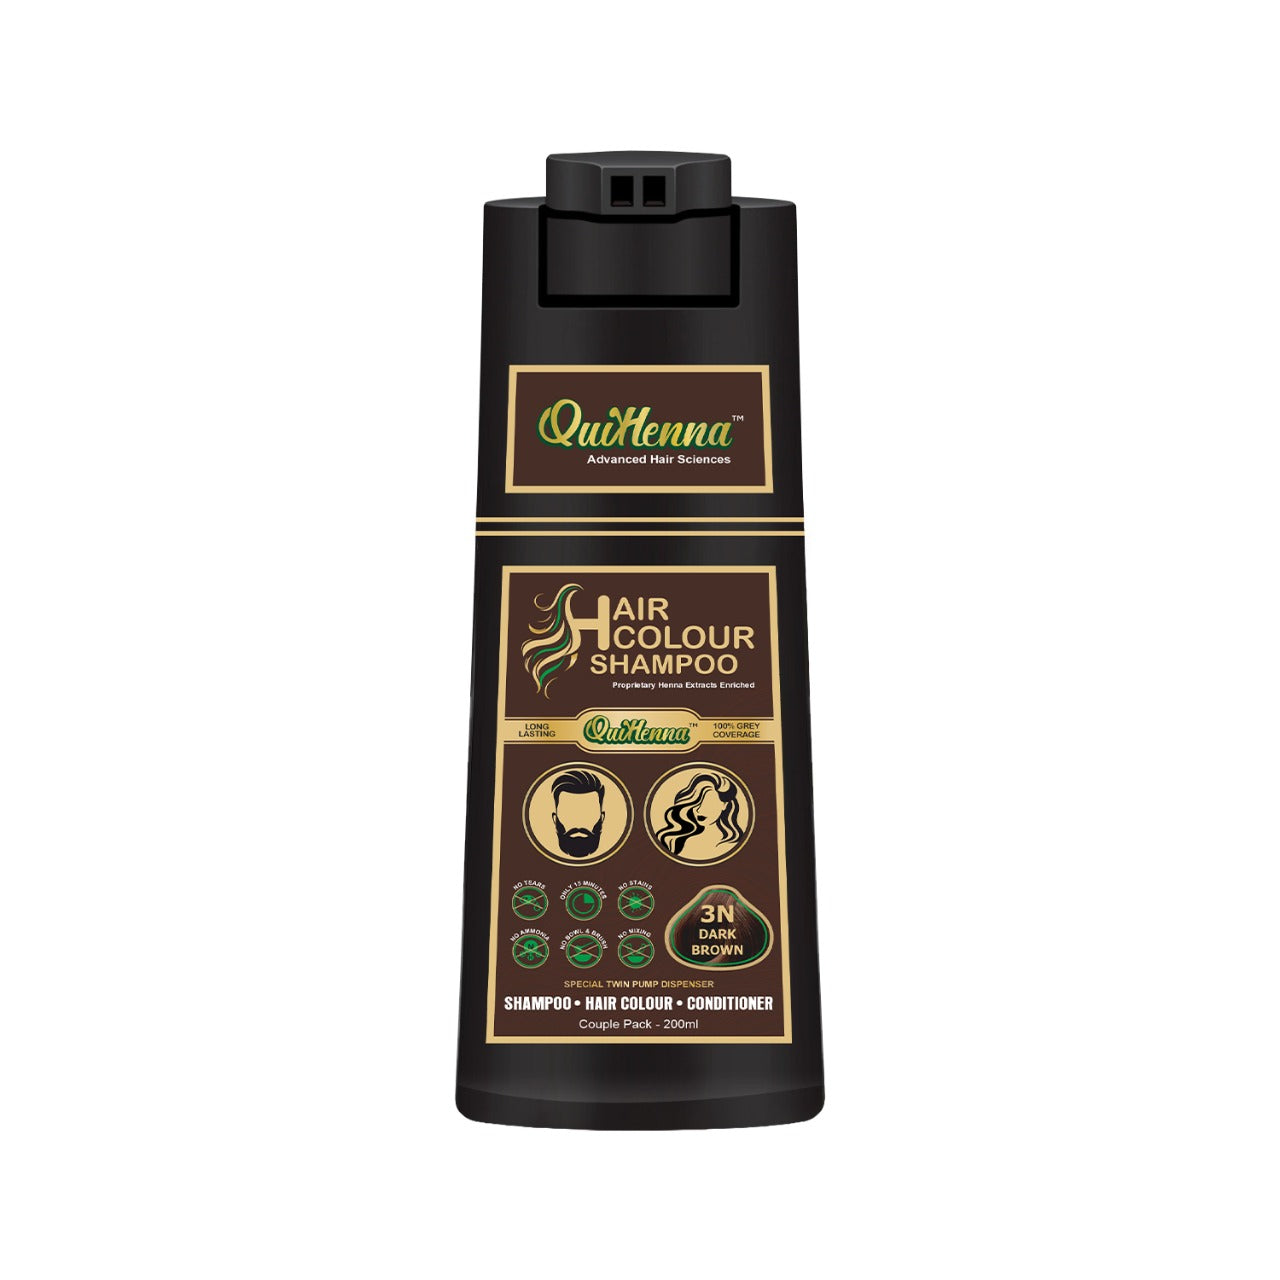 QuikHenna Ammonia Free Hair Colour Shampoo For Men and Women dark brown